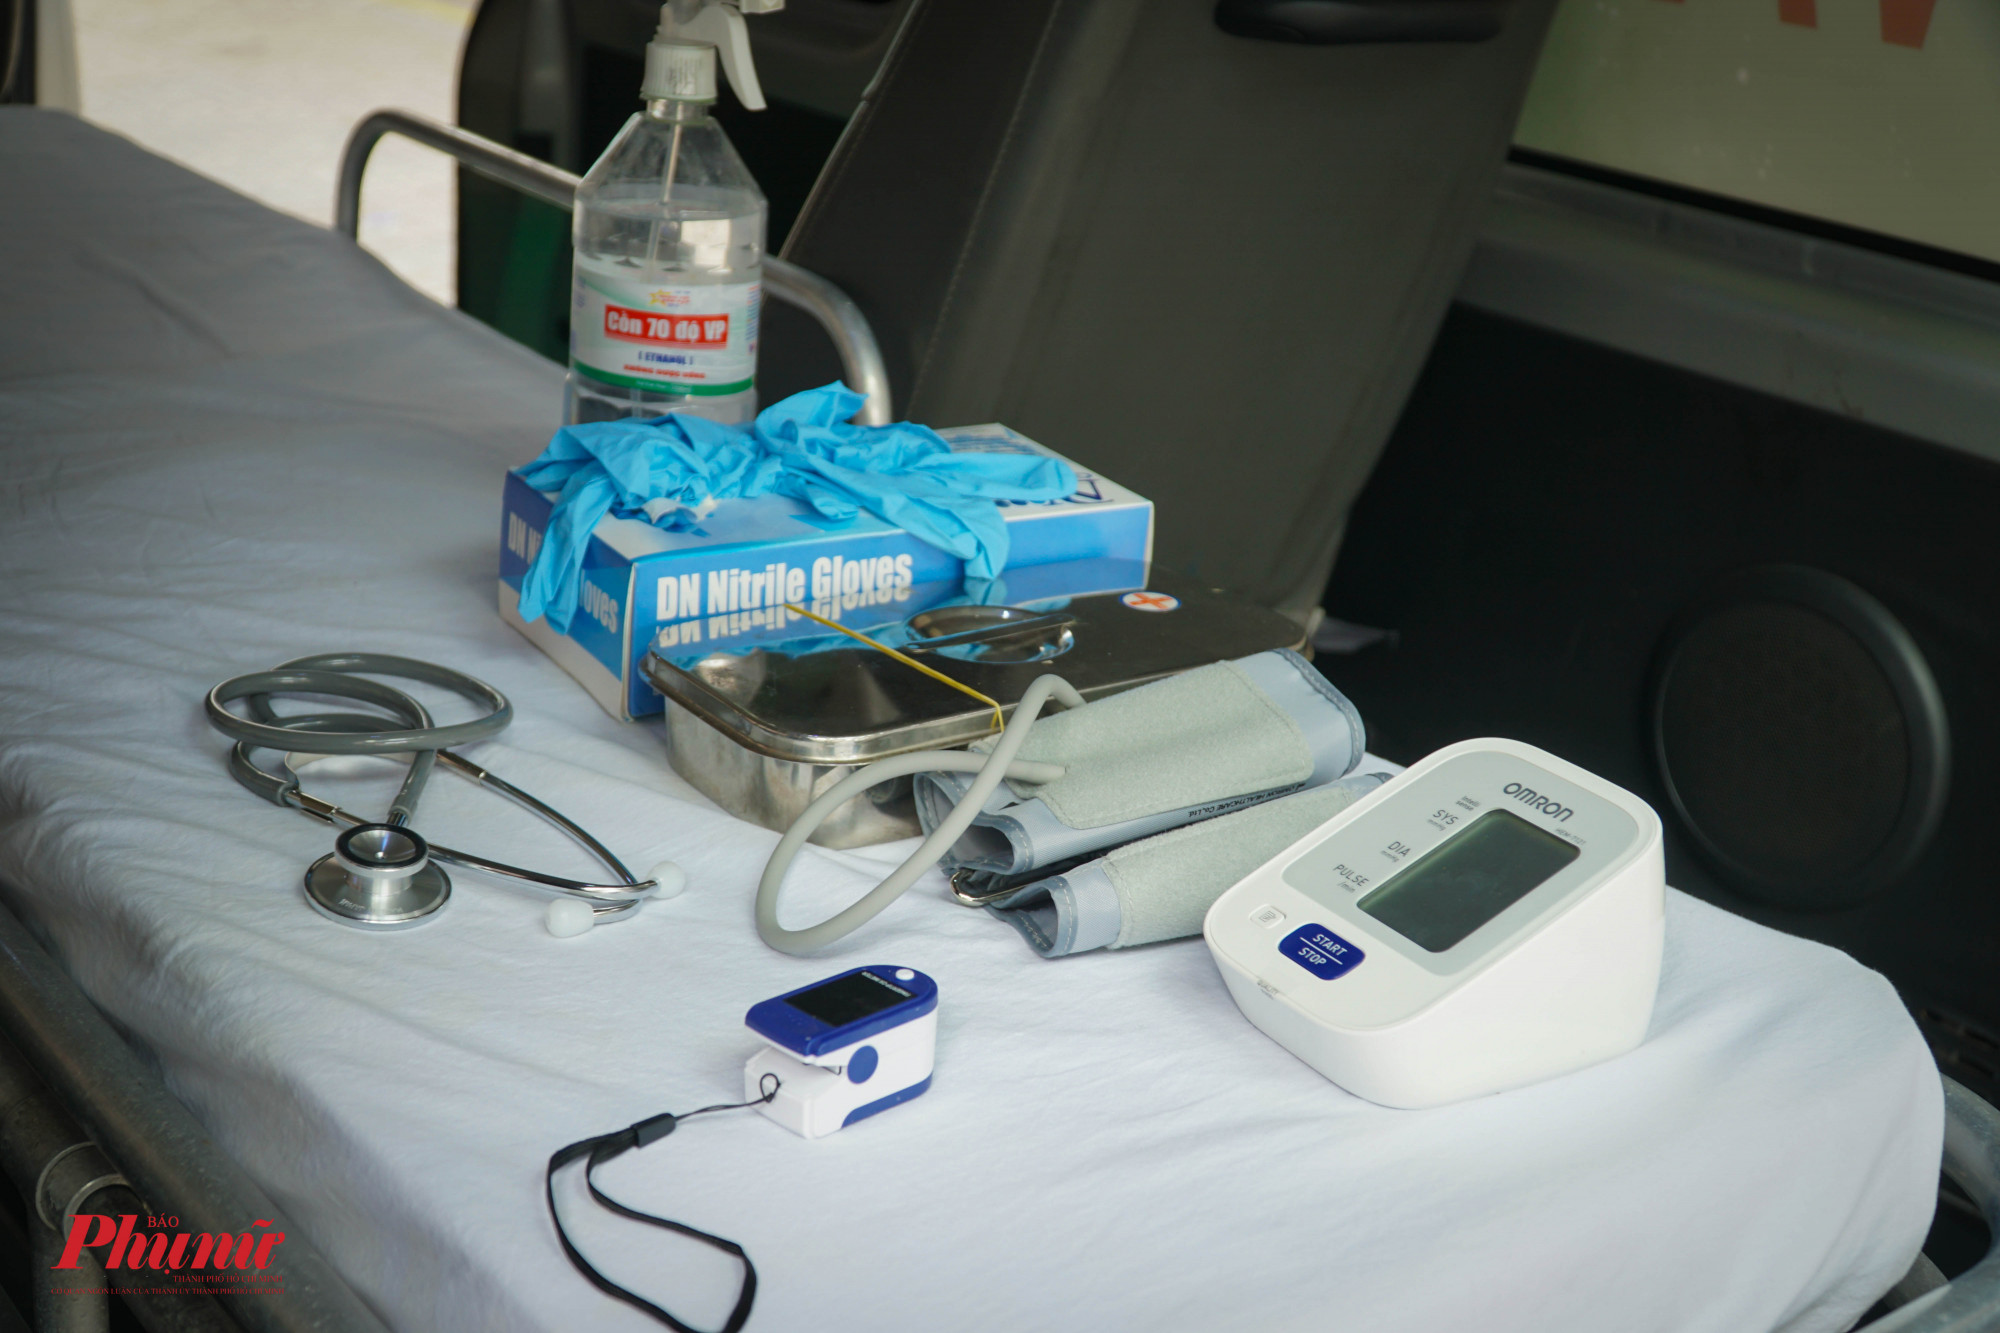 Trên xe lưu động sẽ được bố trí những trang thiết bị Y tế cơ bản cho việc cấp cứu